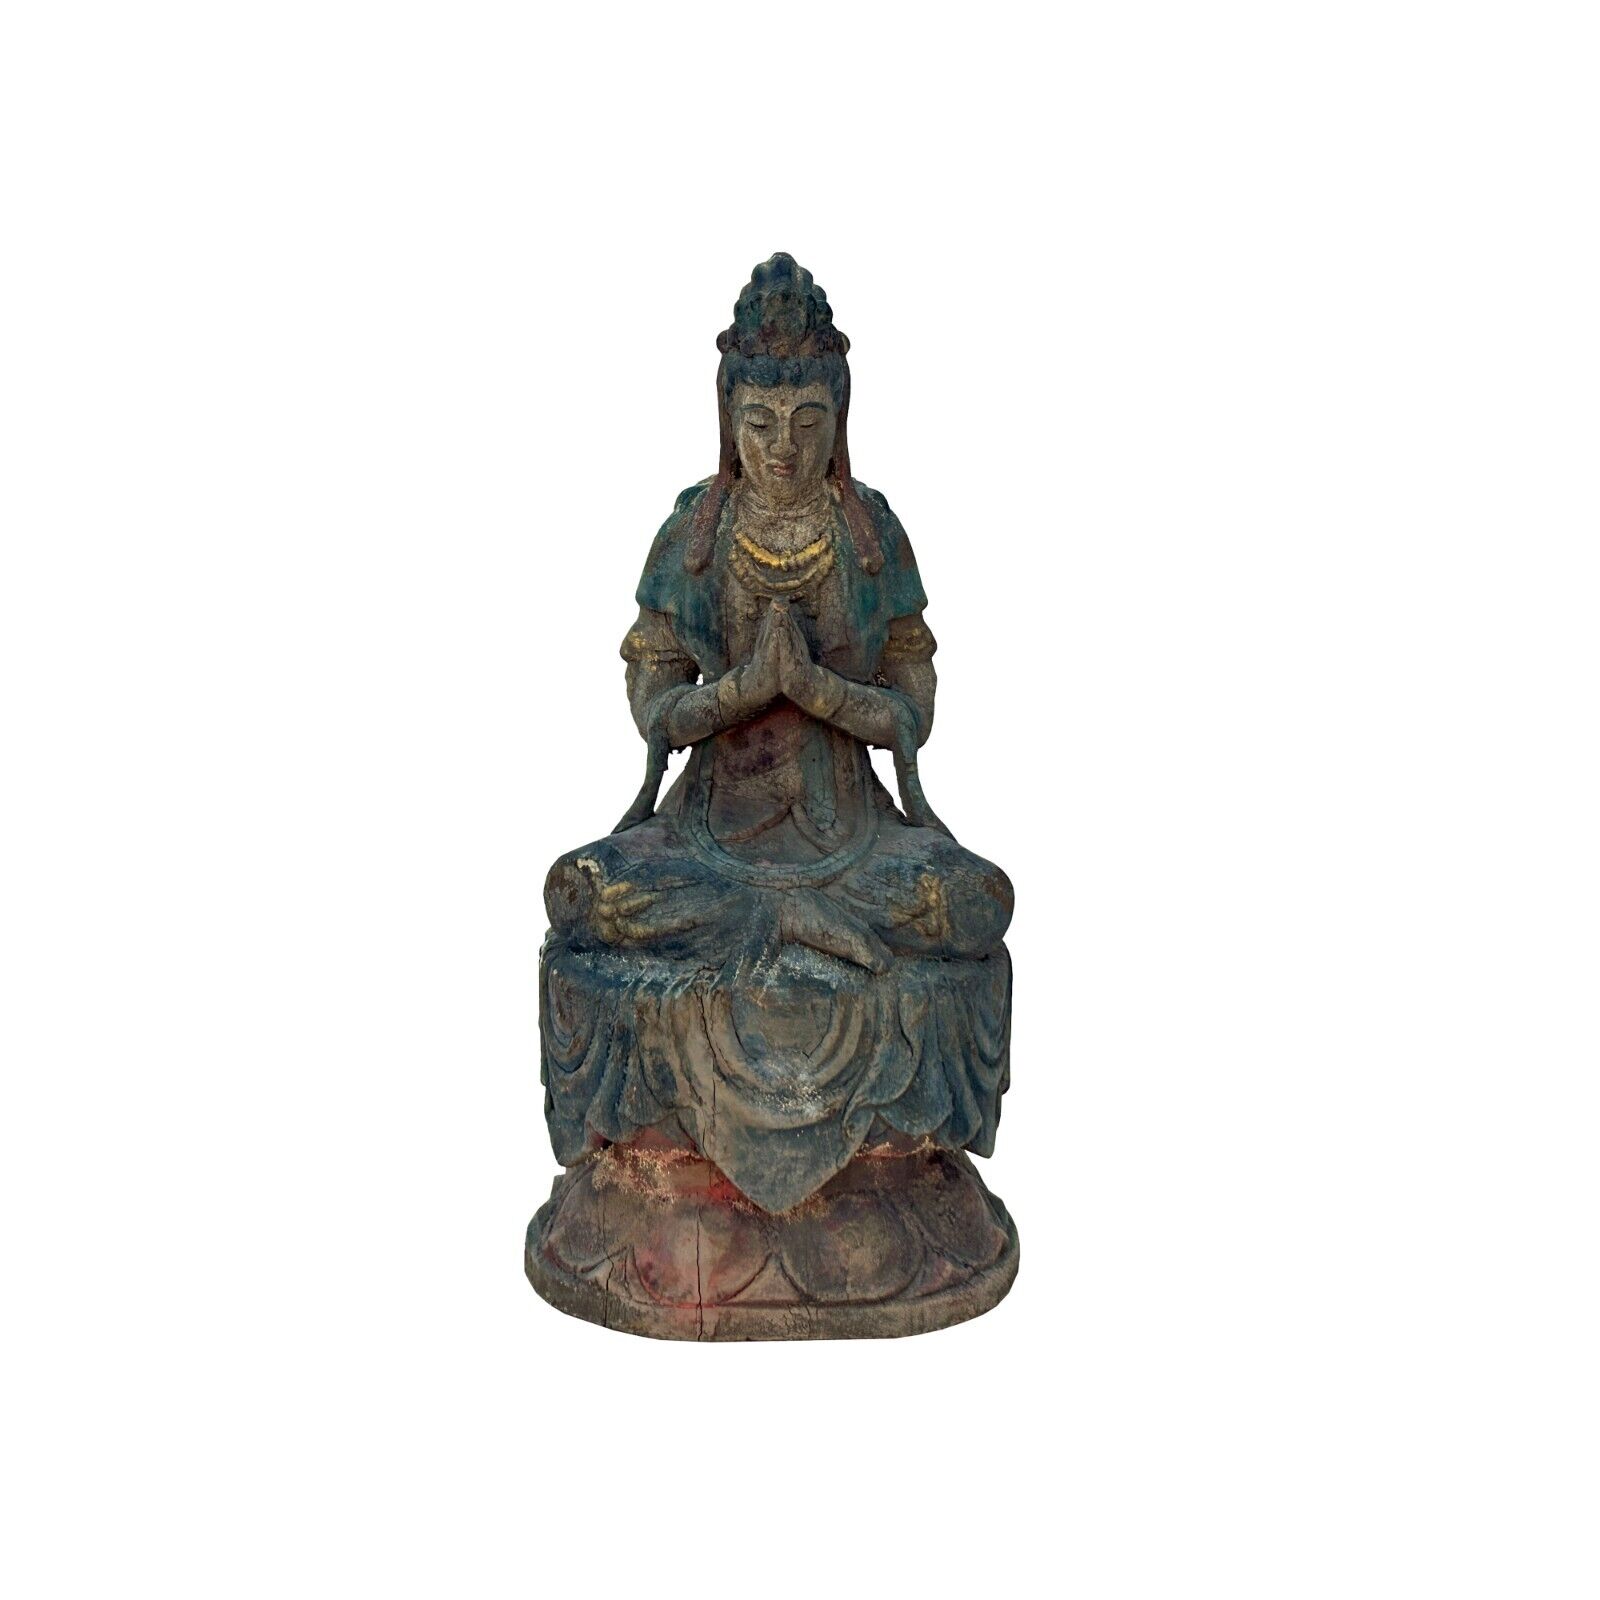 Rustic Chinese Sitting Anjali Mudra Bodhisattva Guan Yin Statue ws3594